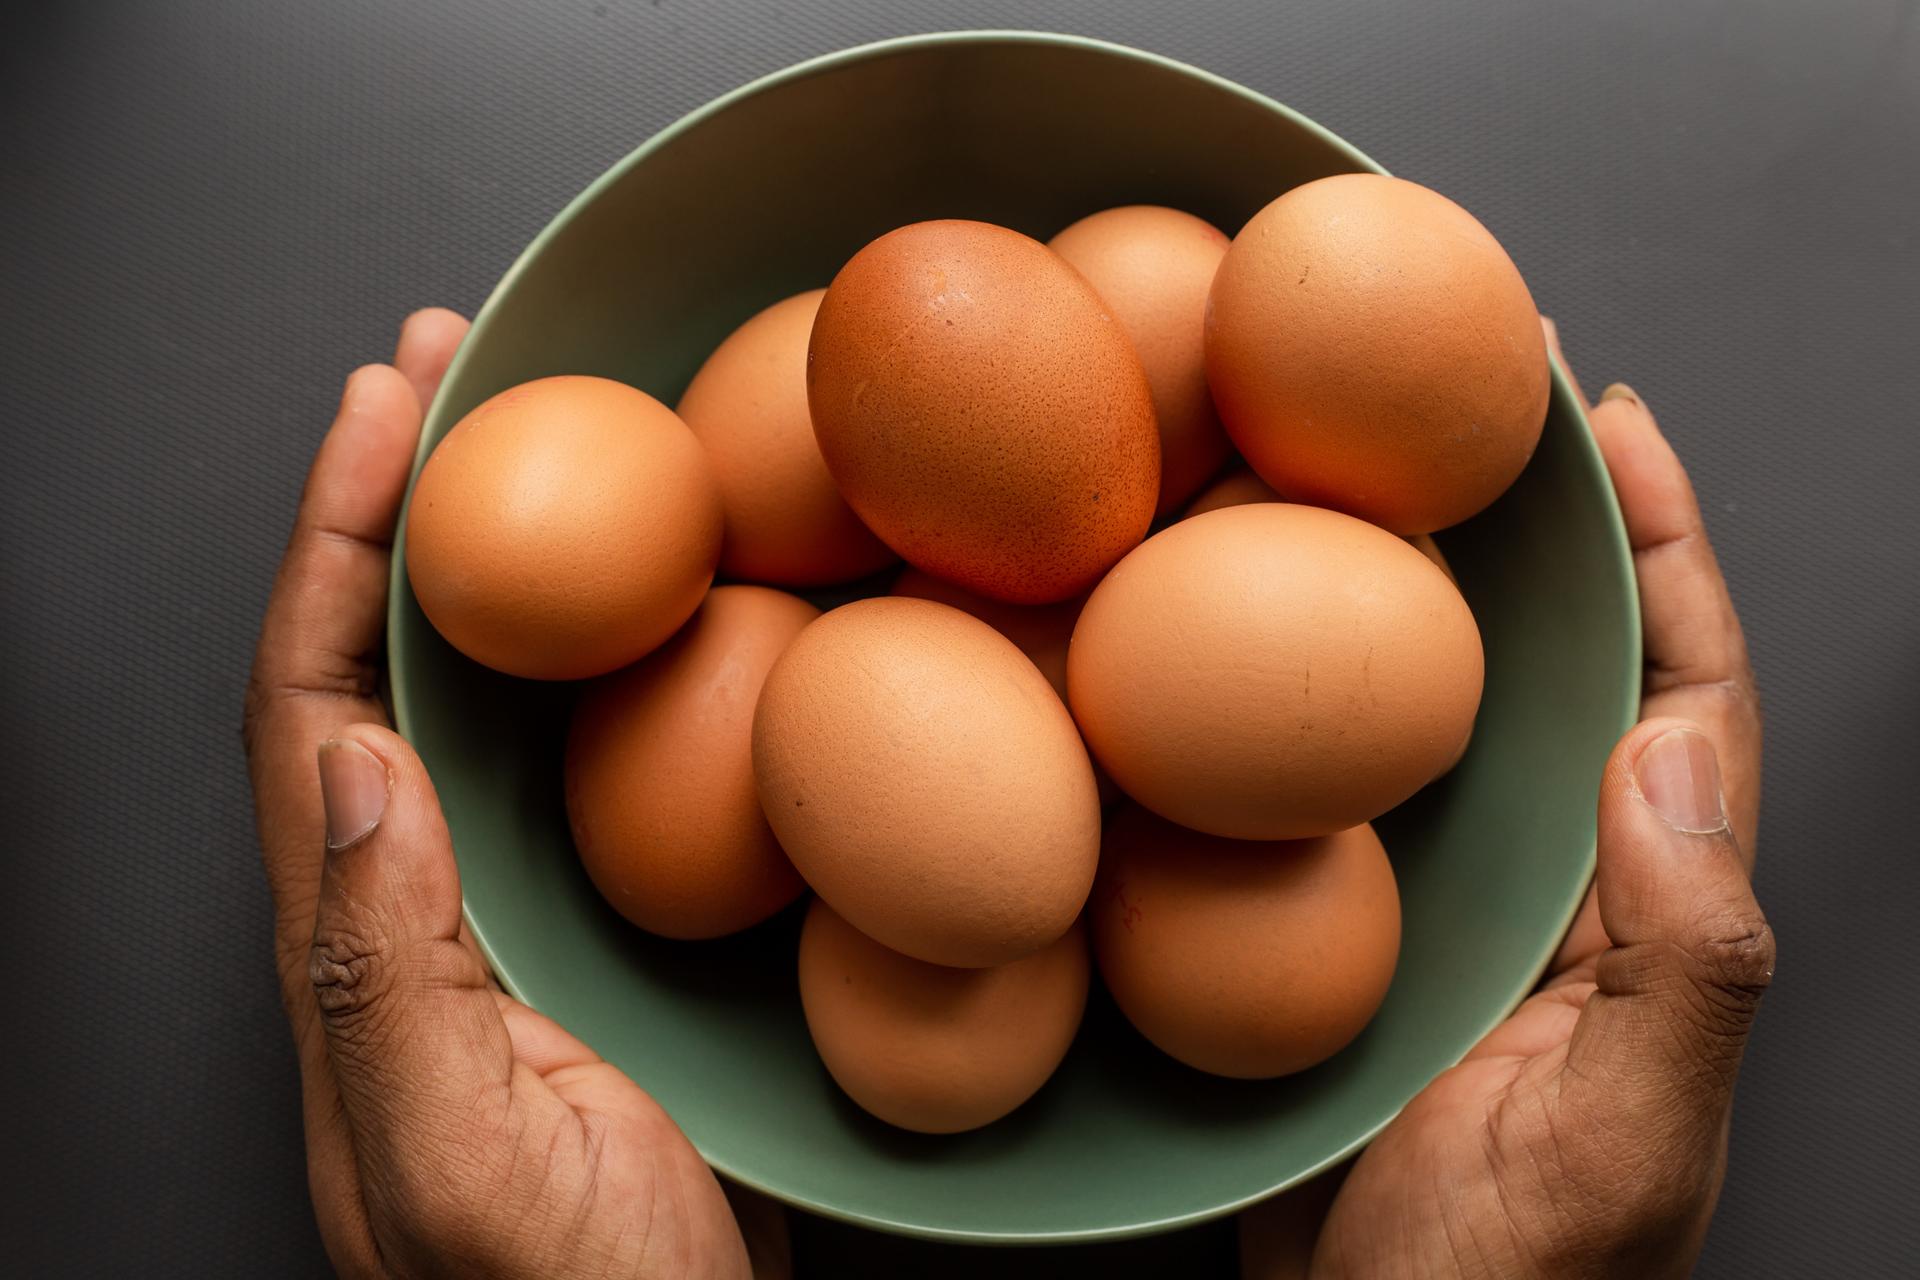 지리산 자락에서 만나는 '행복한' 유기농 계란 : ㅊㅊ레터